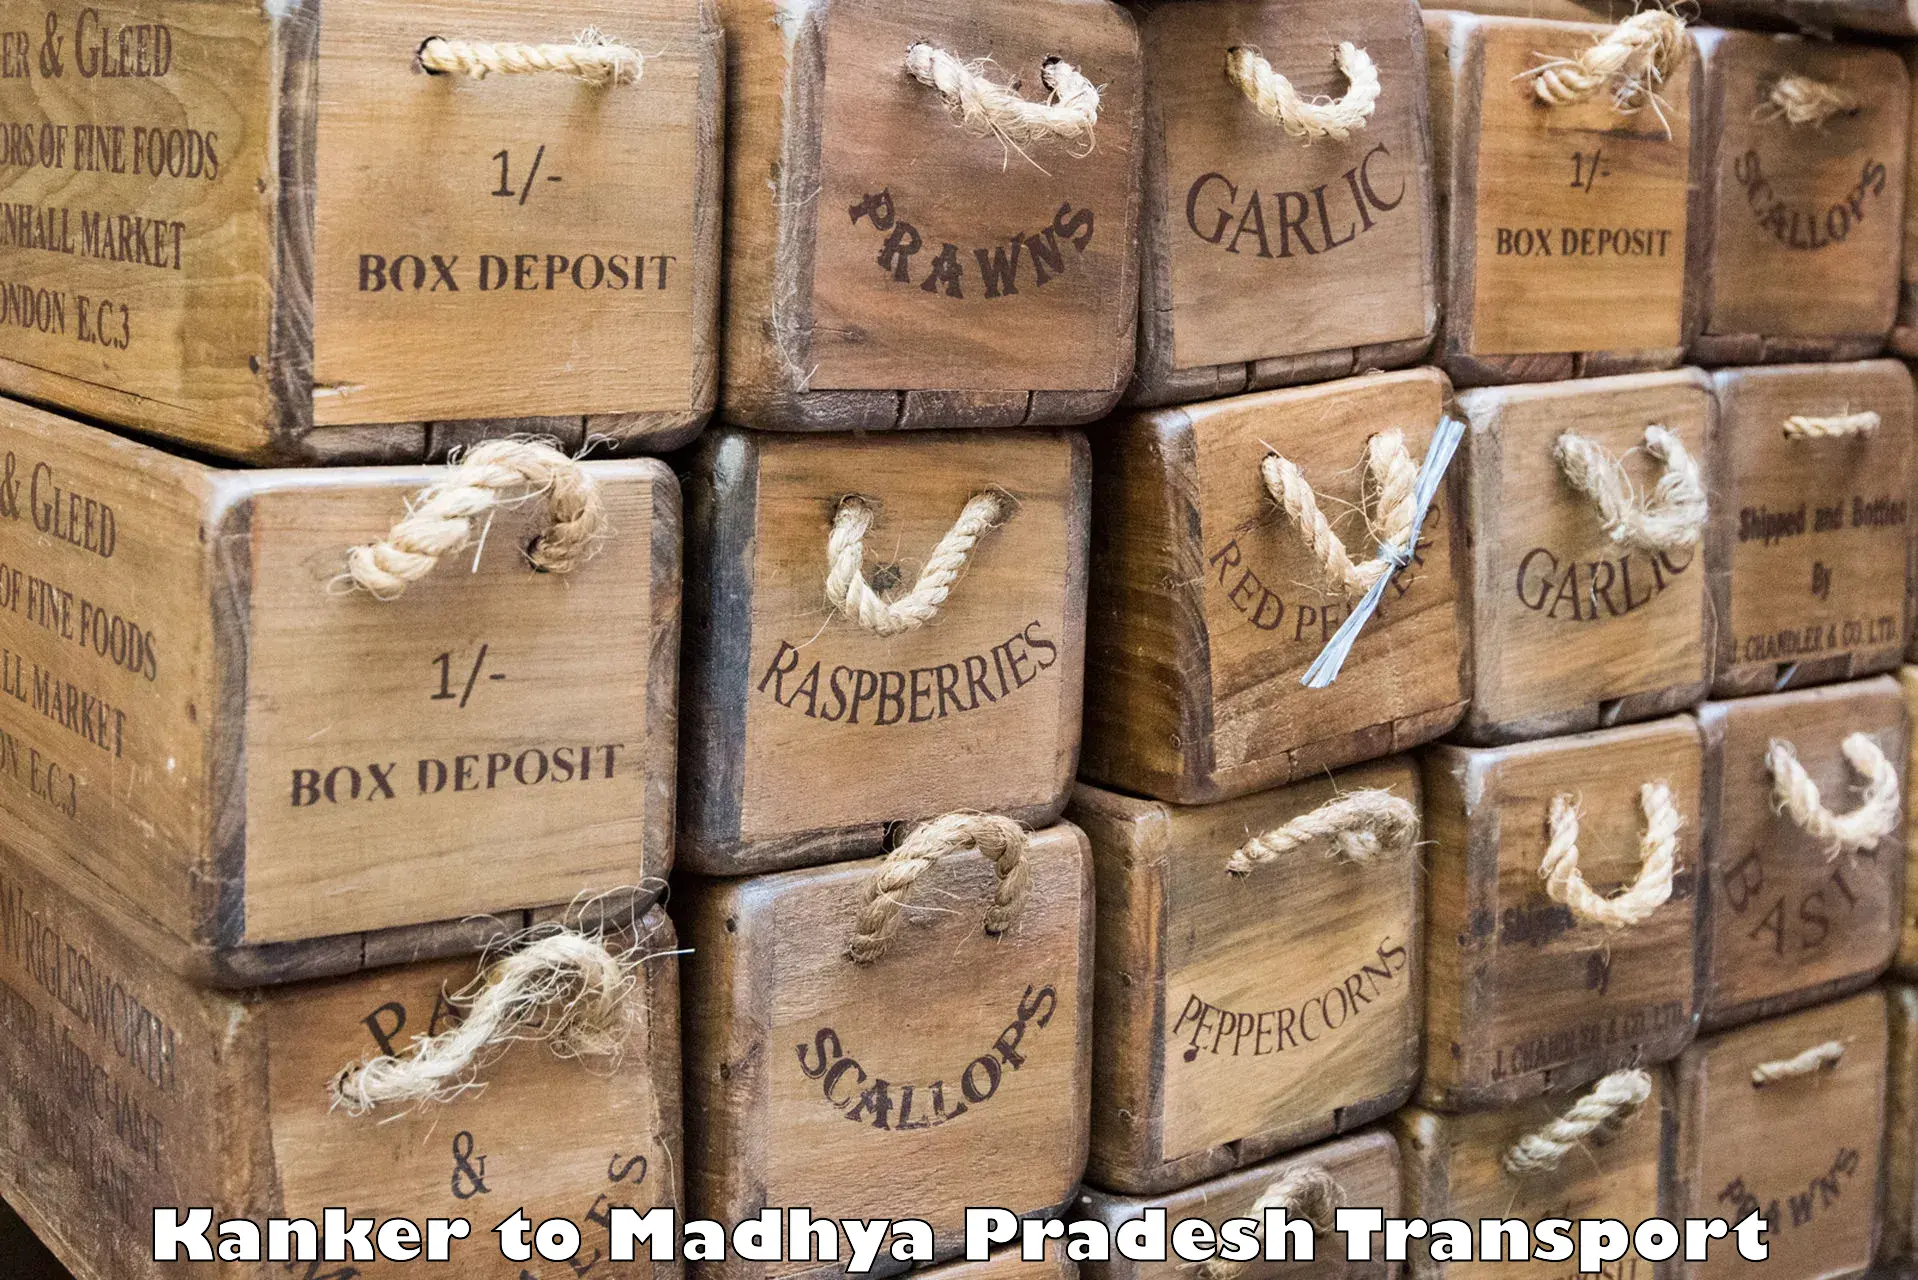 Two wheeler parcel service Kanker to Rampur Naikin